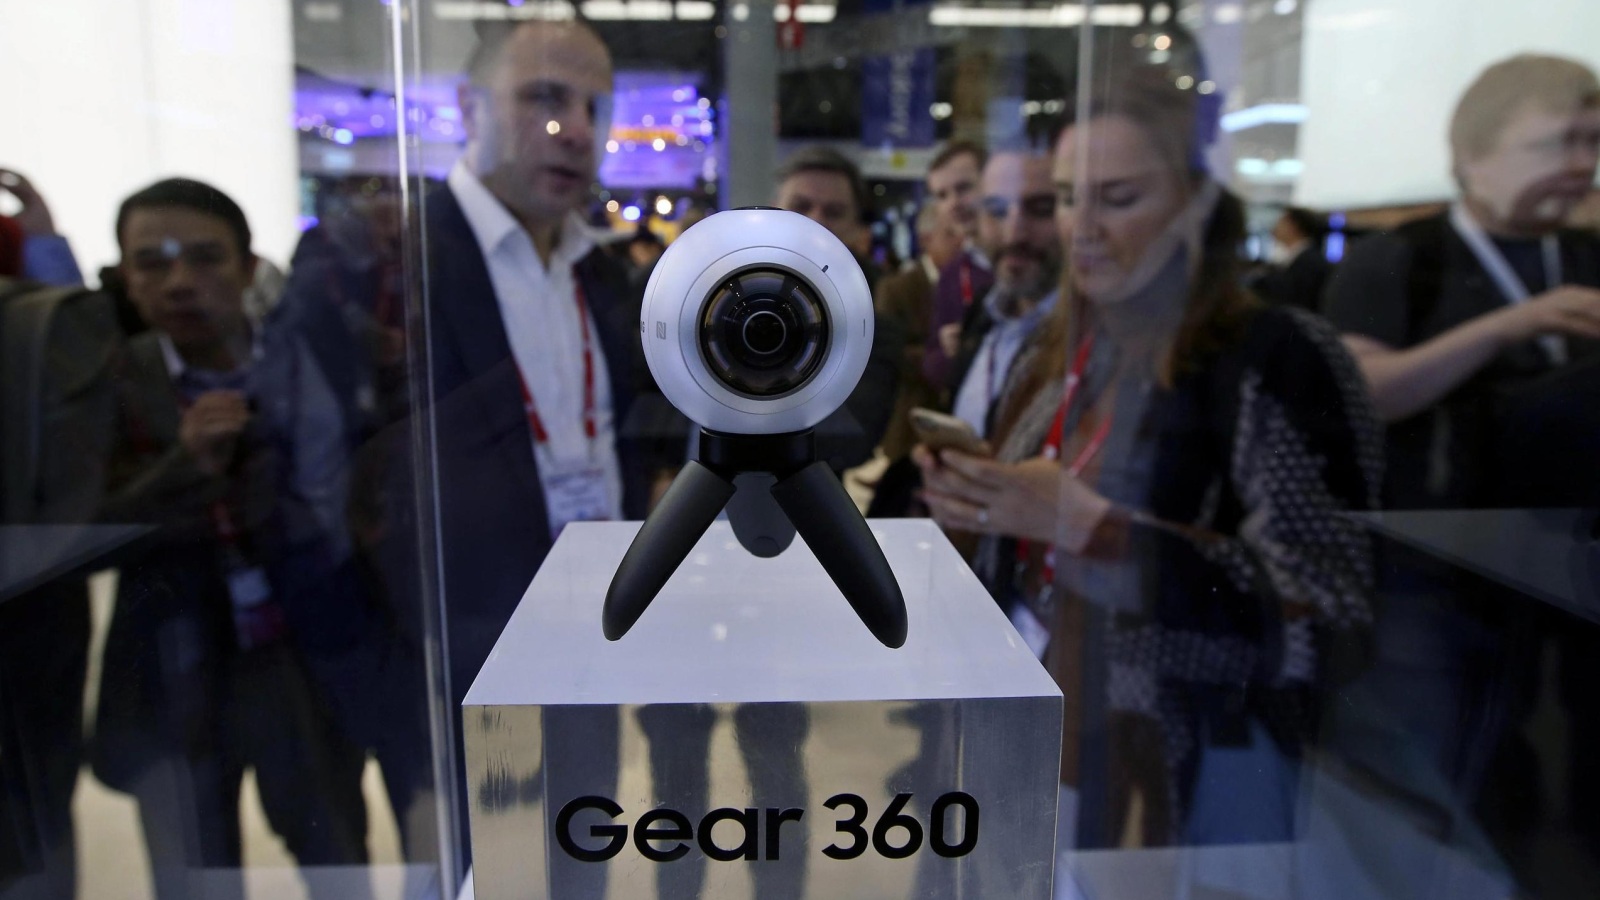 ‪كاميرا تصور فيديو بزاوية 360 درجة لاستخدامه في نظارات الواقع الافتراضي‬ (الأوروبية)